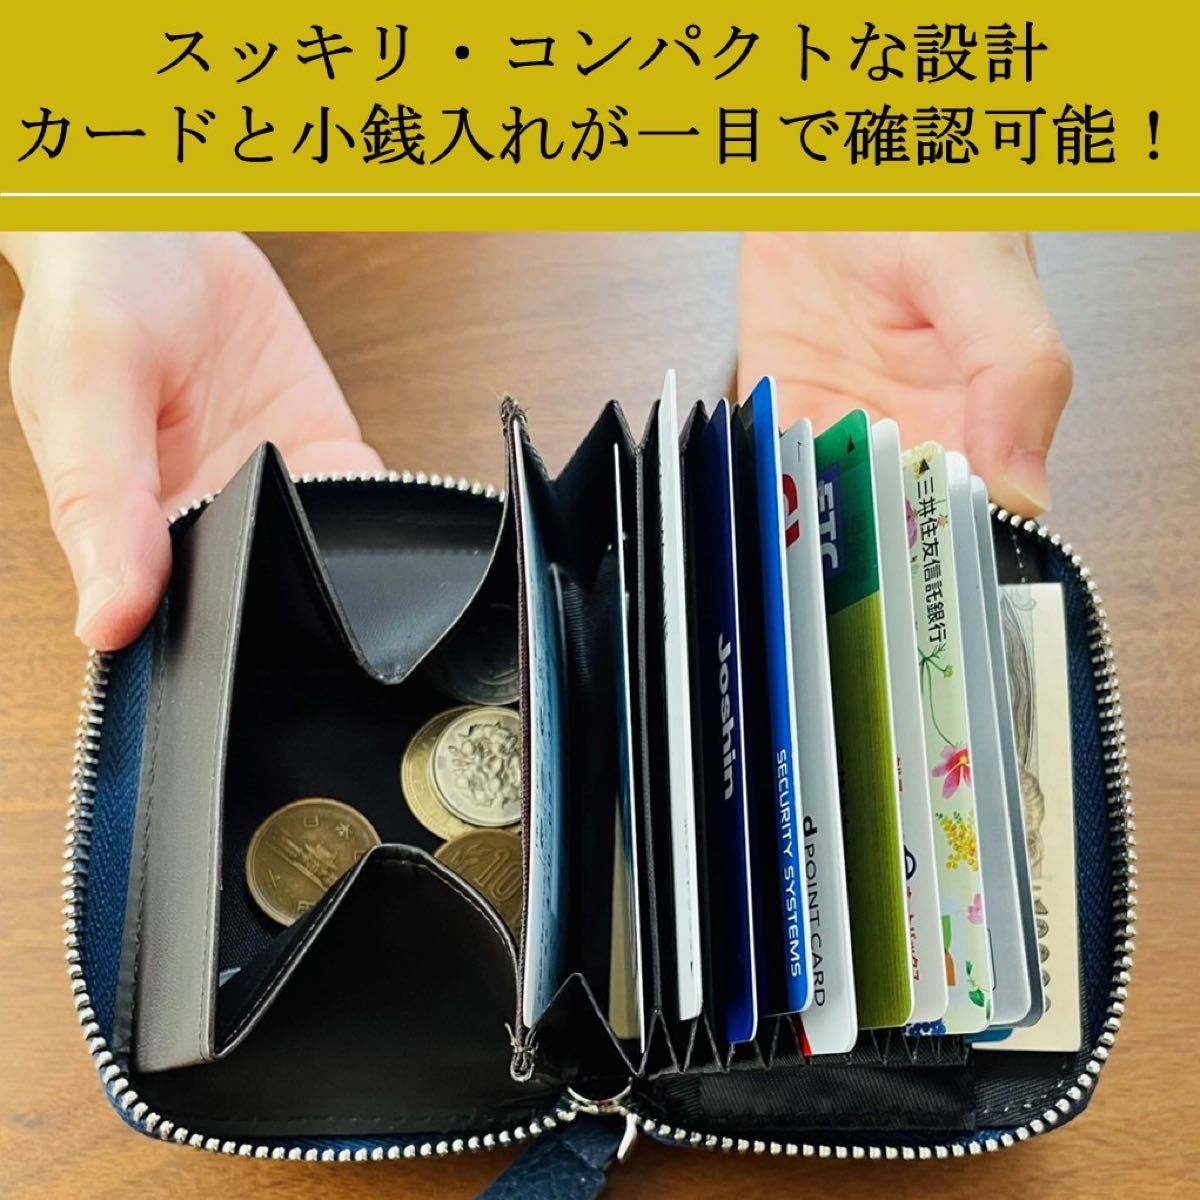 コインケース付き カードケース ミニ財布 スキミング防止 じゃばら 大容量 グレー シンプル オシャレ コンパクト グレー